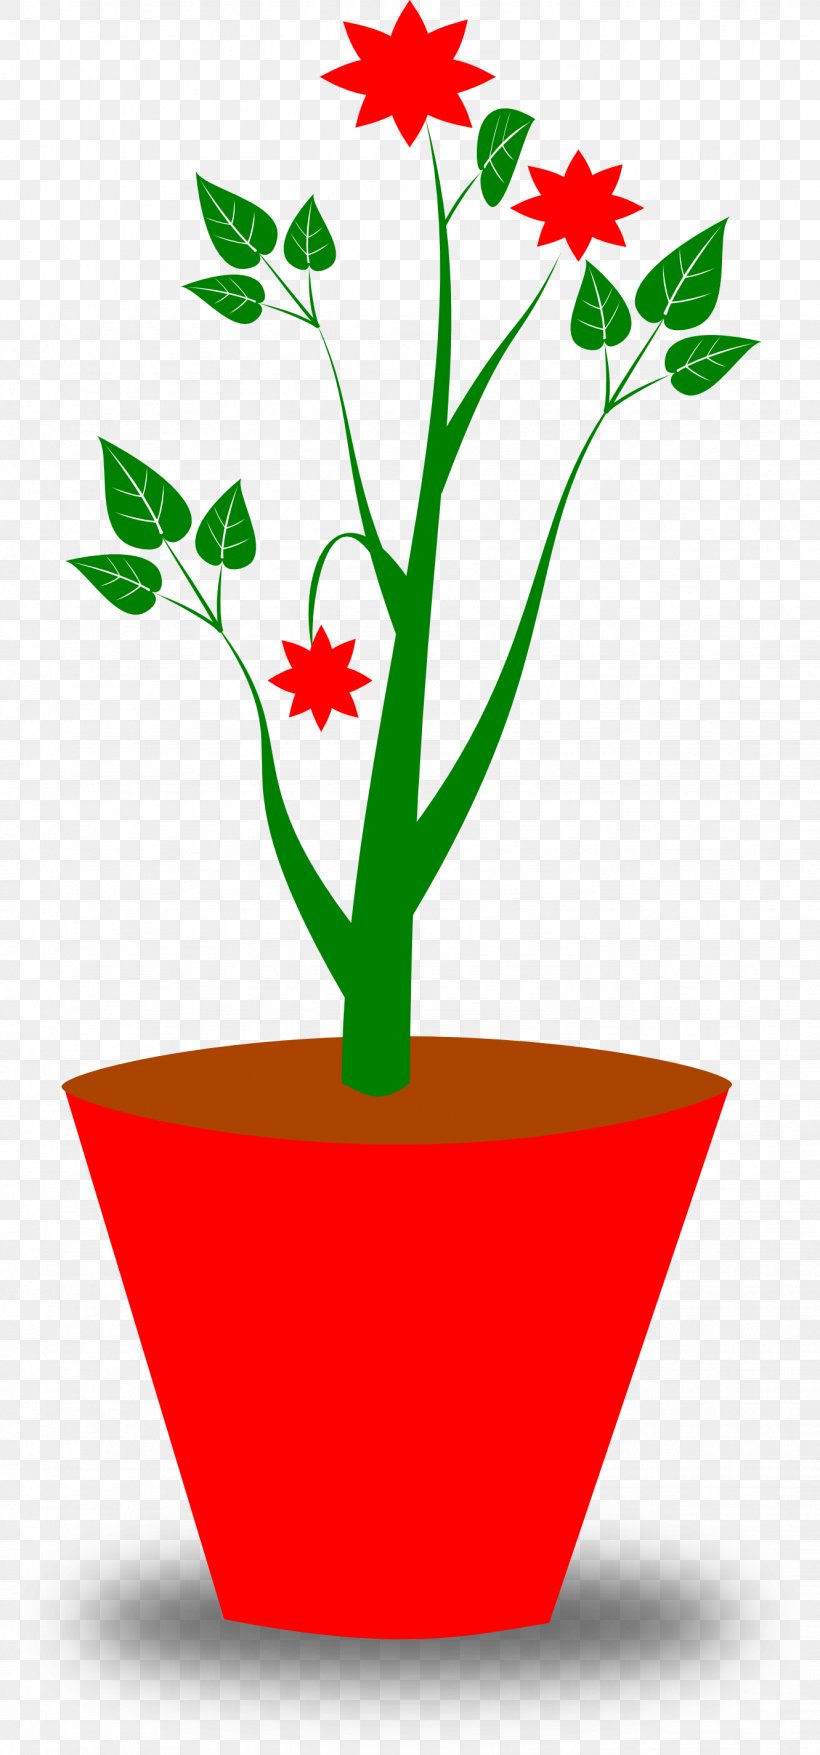 Flowerpot Free Content Clip Art, PNG, 1331x2850px, Flowerpot, Artwork, Branch, Cut Flowers, Flora Download Free